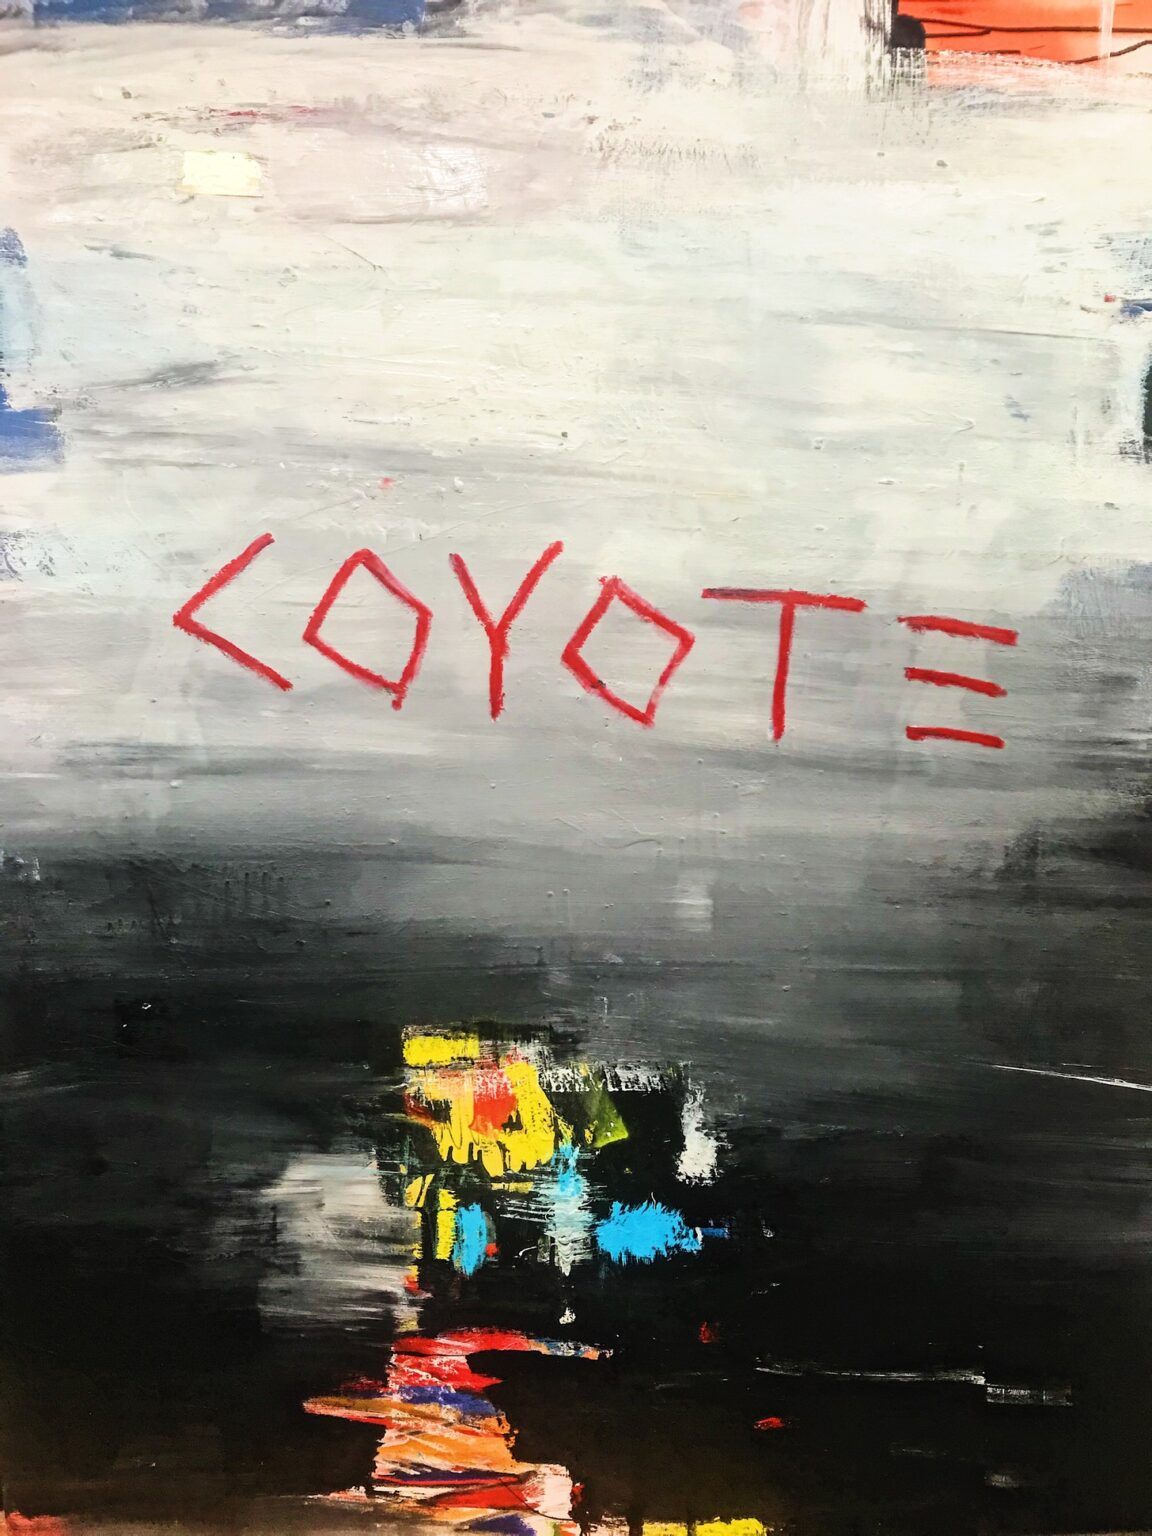 Coyote: A Solo Exhibition